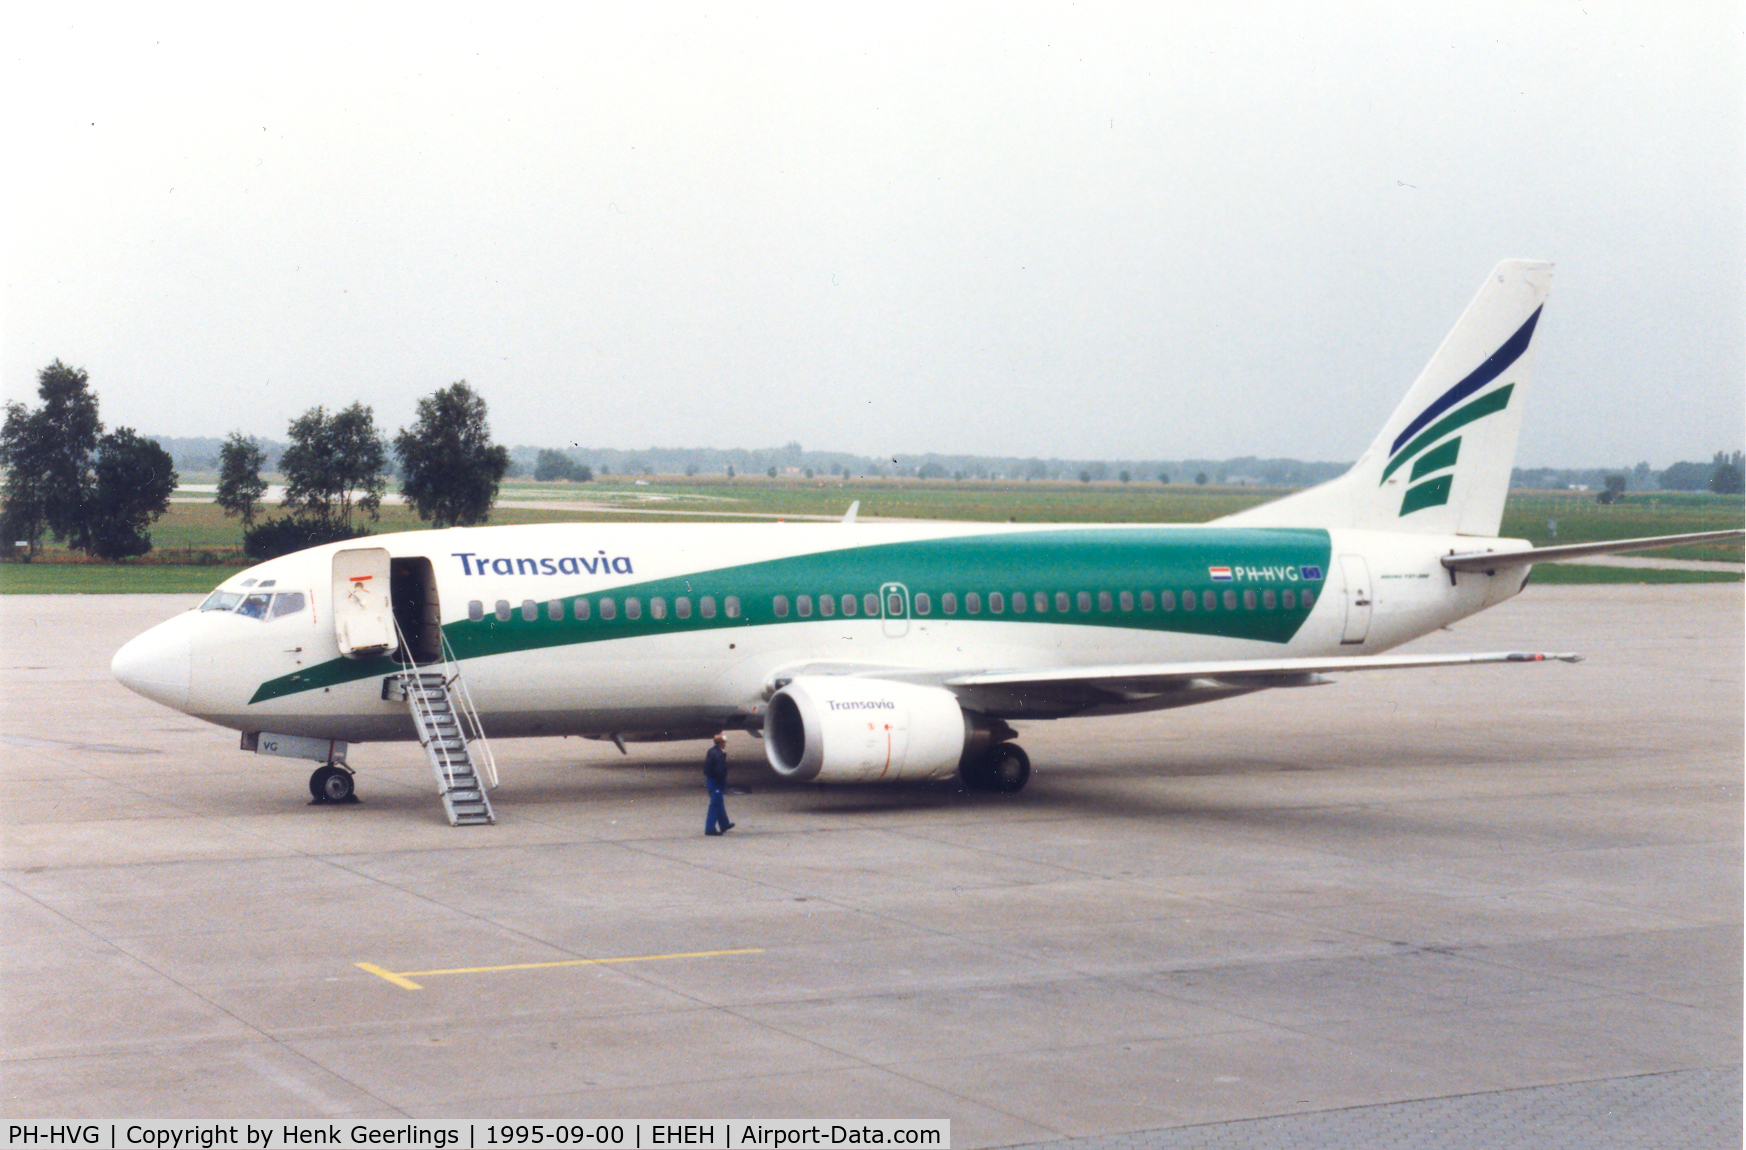 PH-HVG, 1986 Boeing 737-3K2 C/N 23412, Transavia